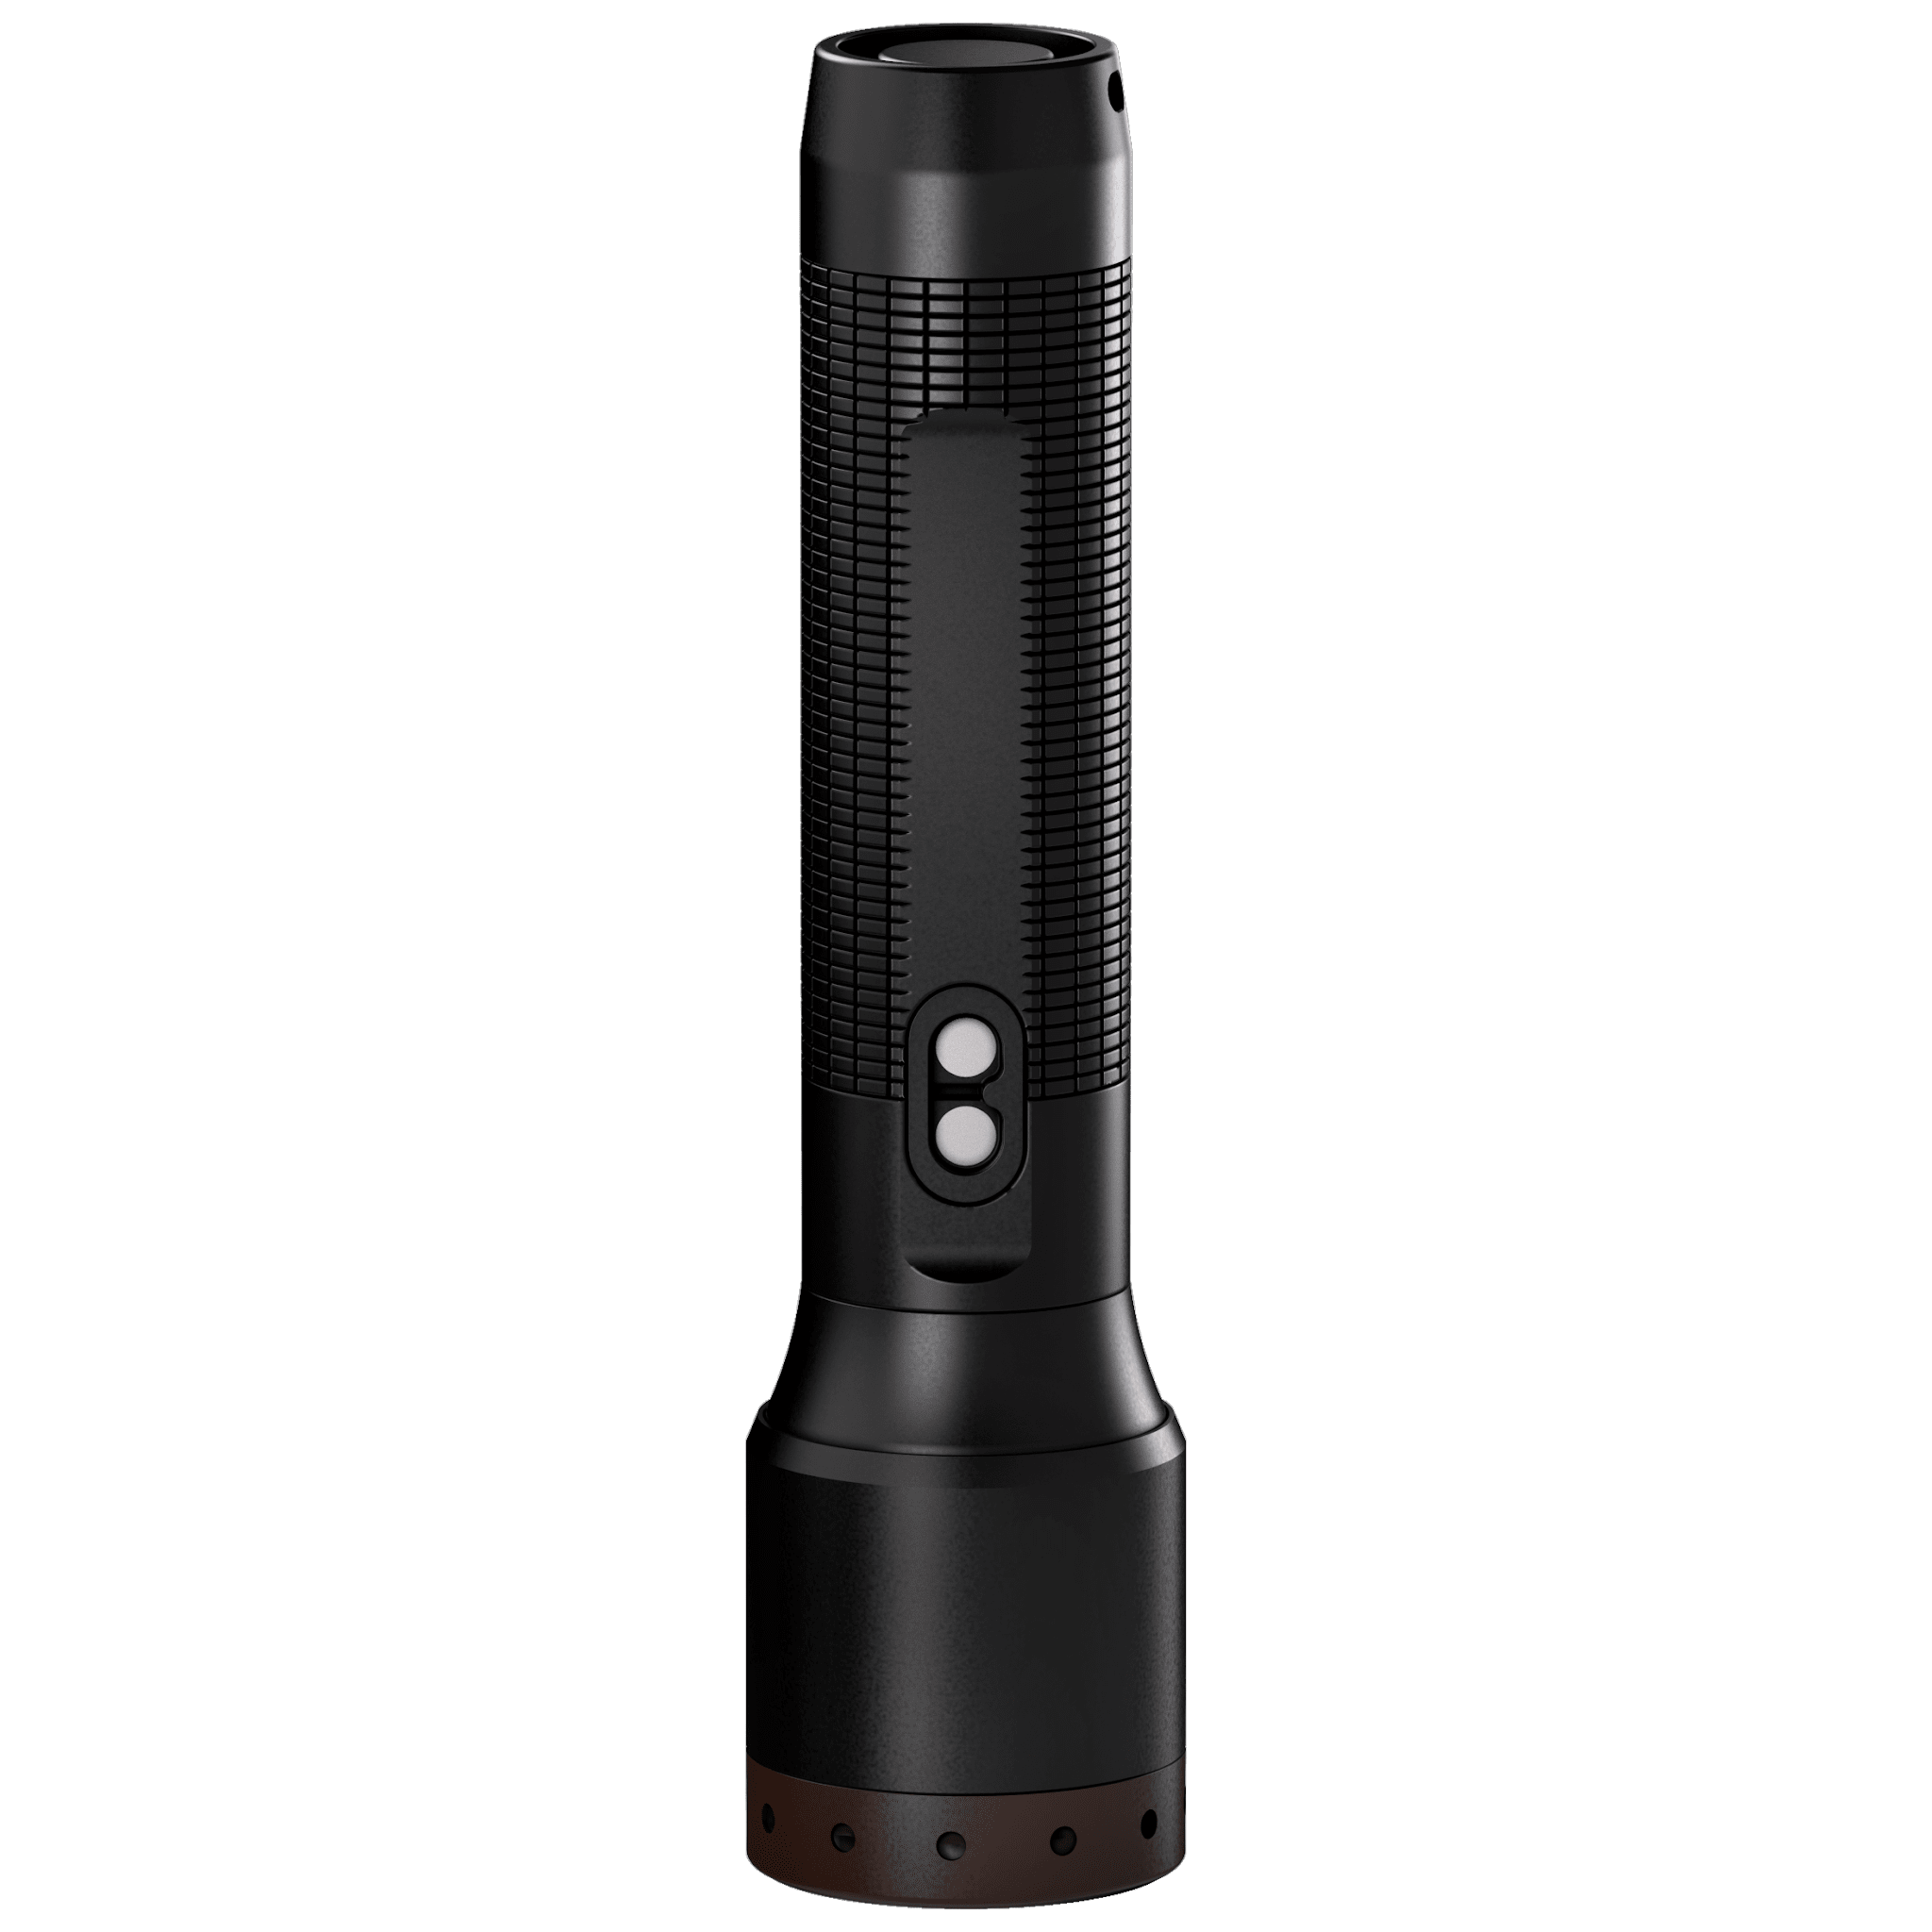 Rechargeable Flashlight 500lm P5R Core LedLenser